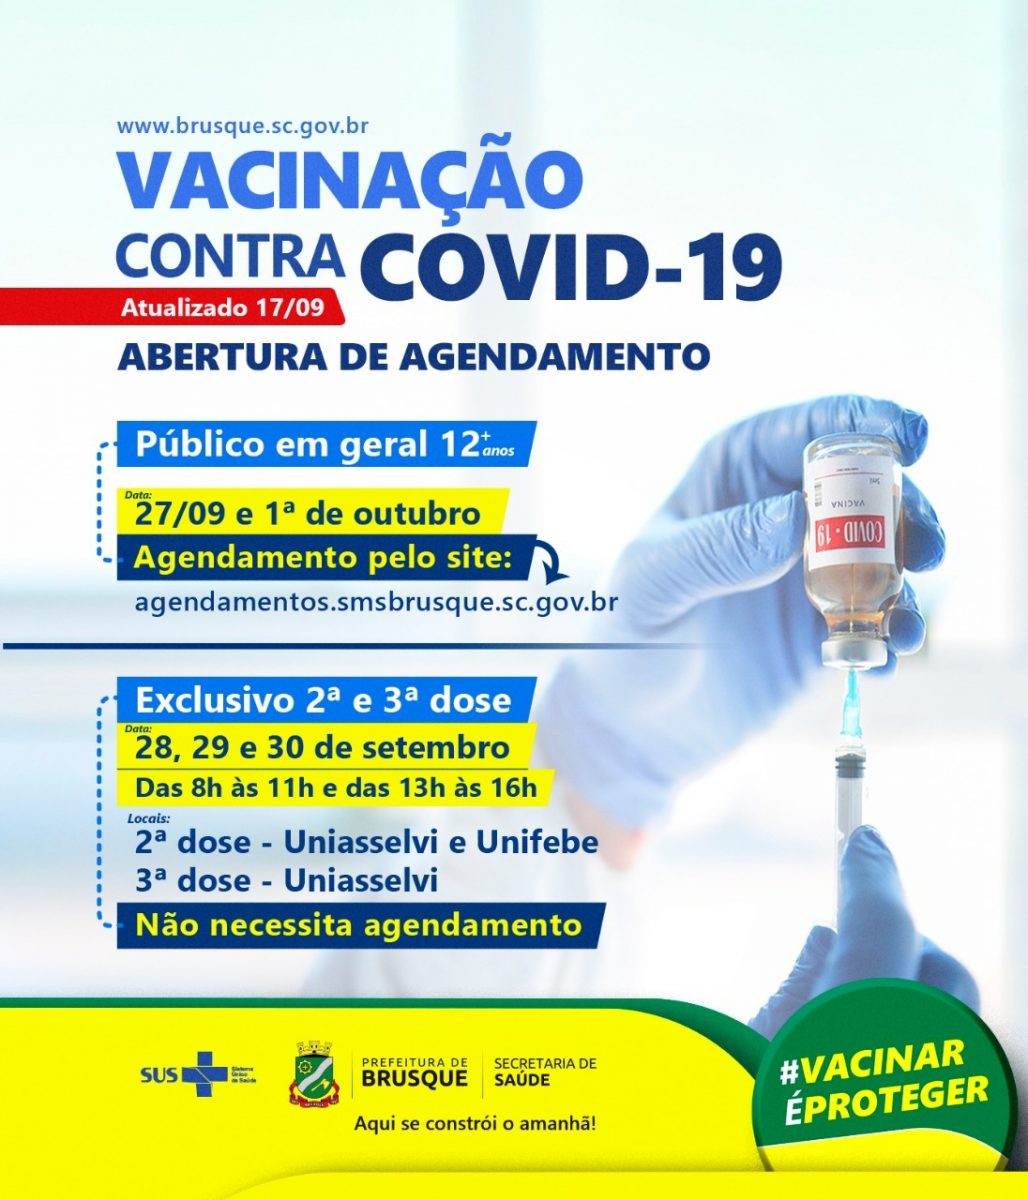 Covid-19: Brusque abre agenda de vacinação para 12 ou mais